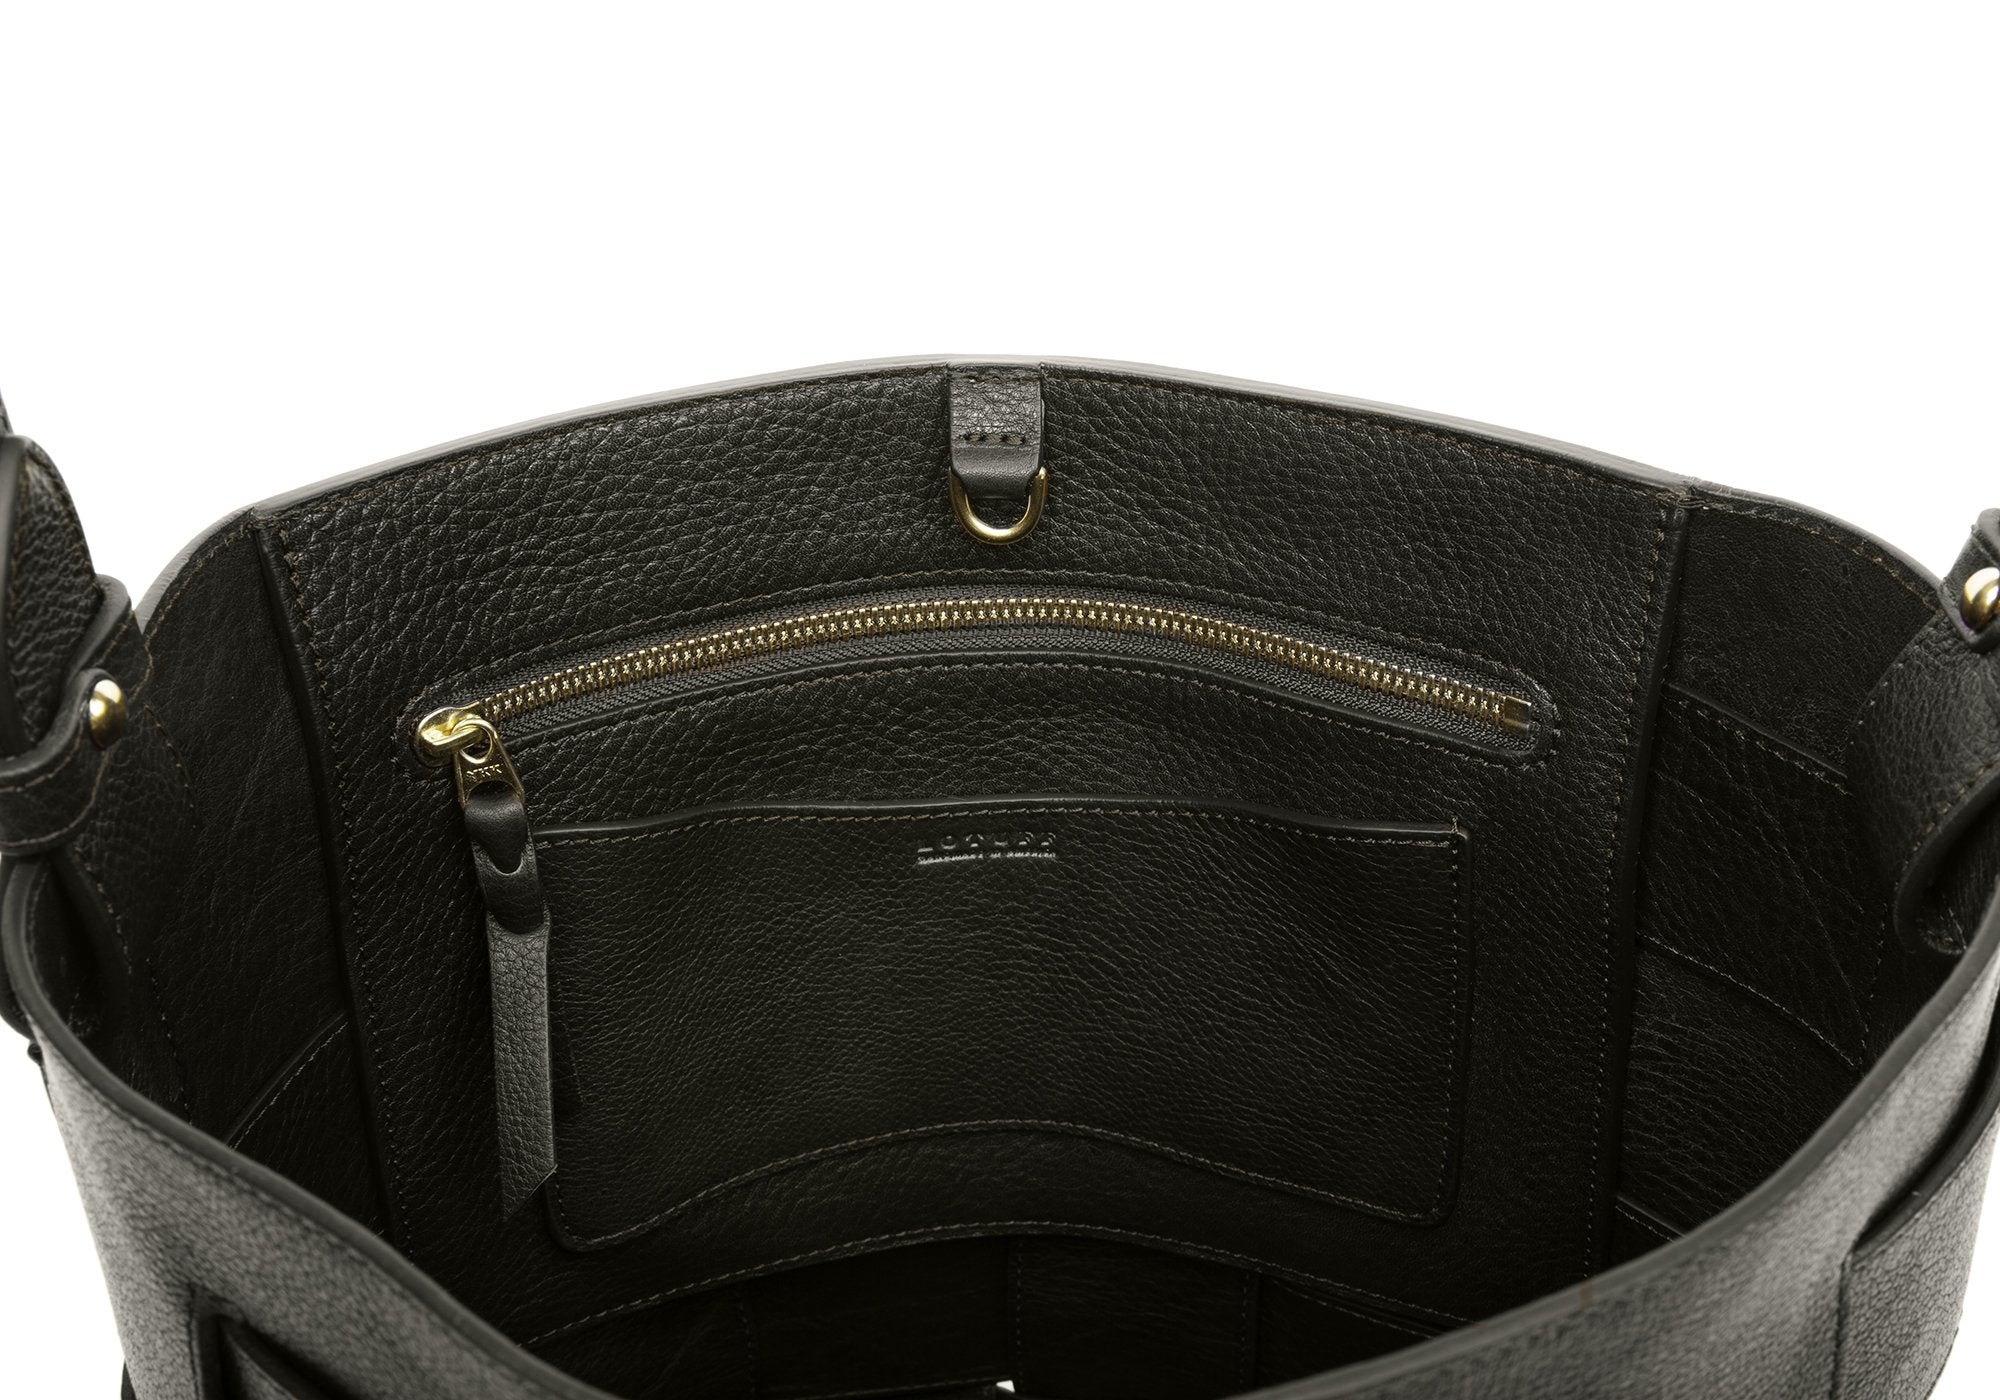 Woven Leather Bucket Shoulder Bag Olive